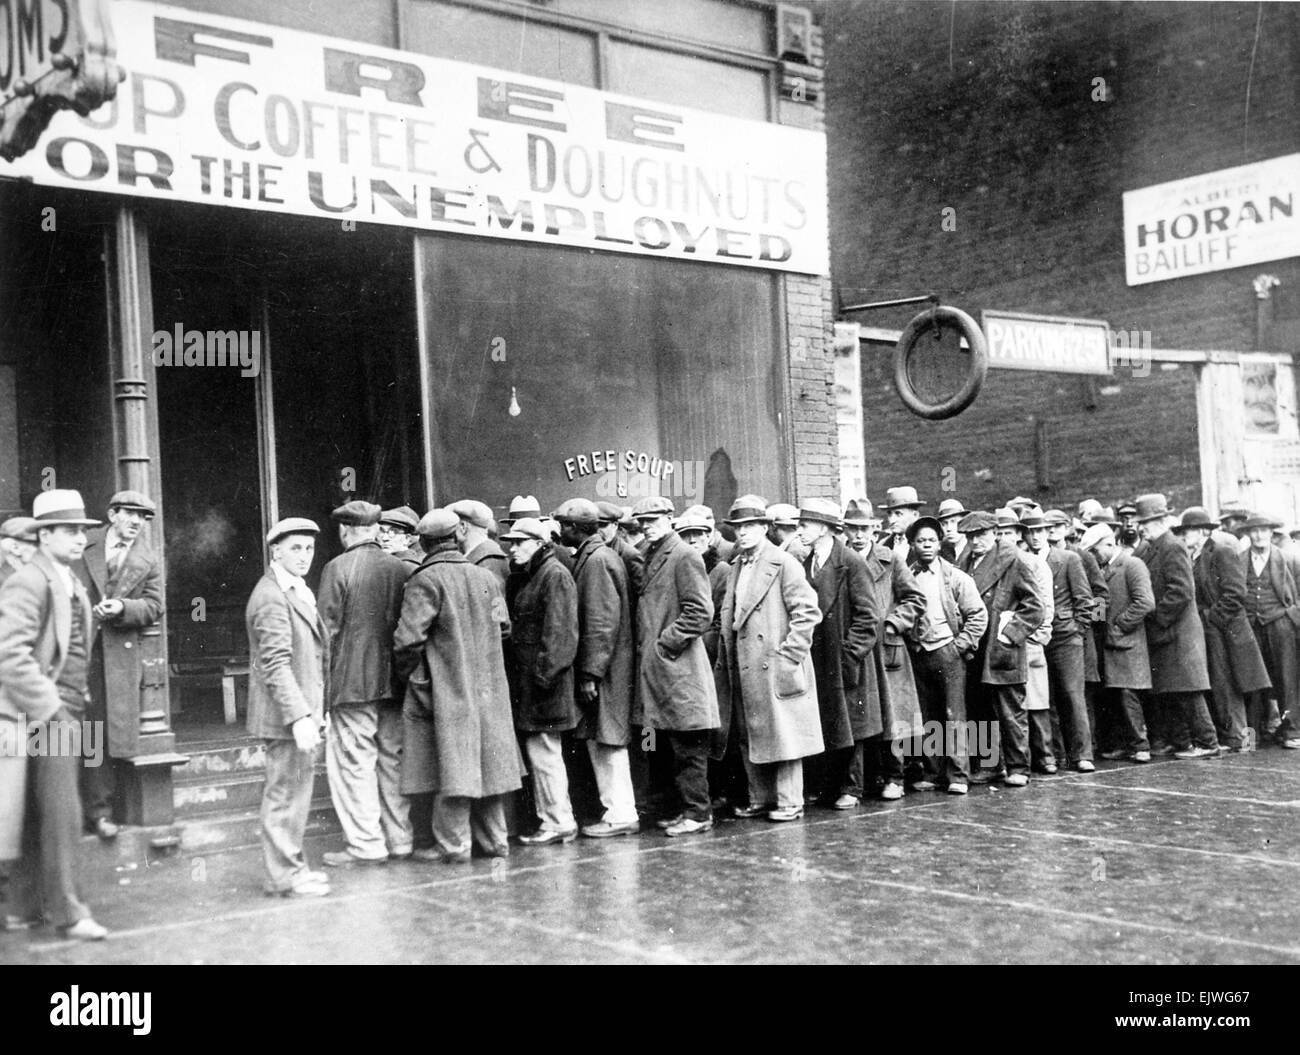 AL CAPONE (1899-1947) American gangster de Chicago a ouvert cette soupe populaire pour les chômeurs en 1931 Banque D'Images